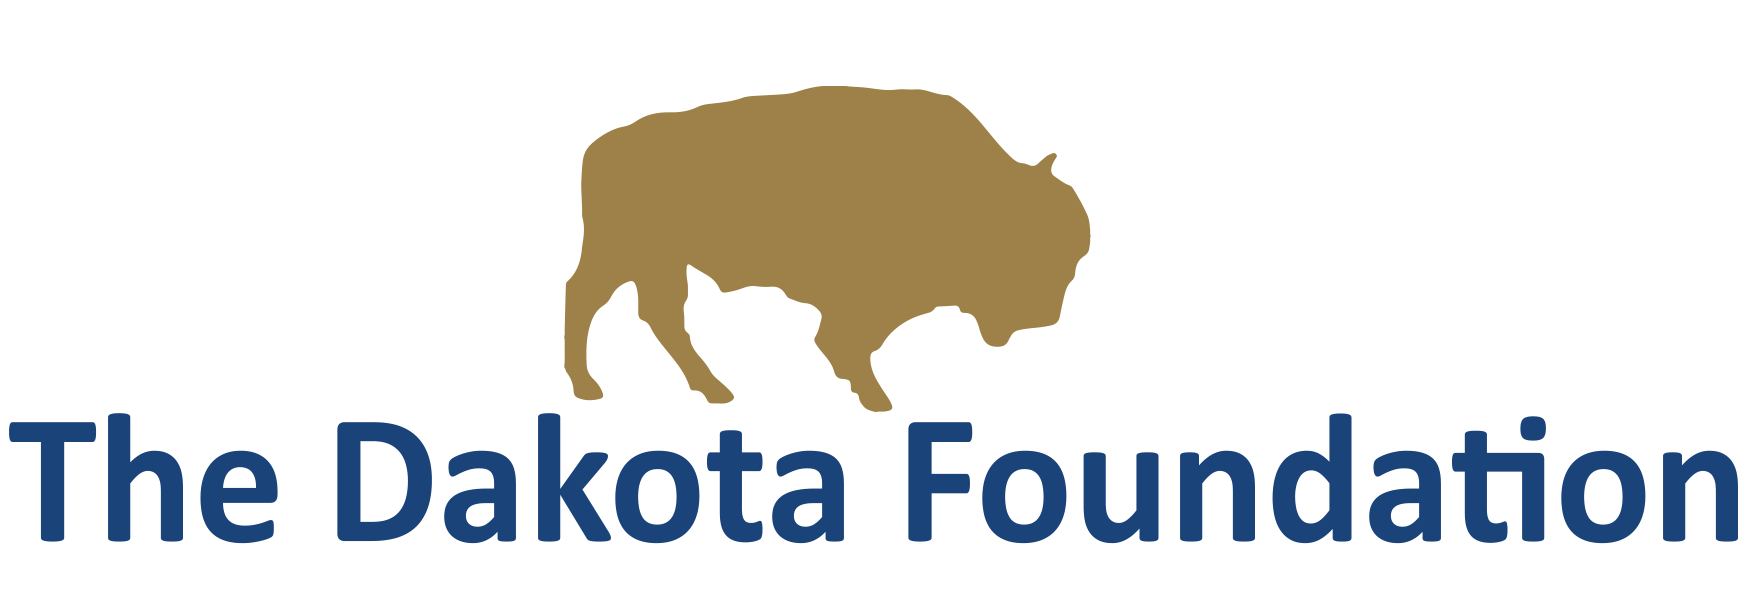 The Dakota Foundation logo